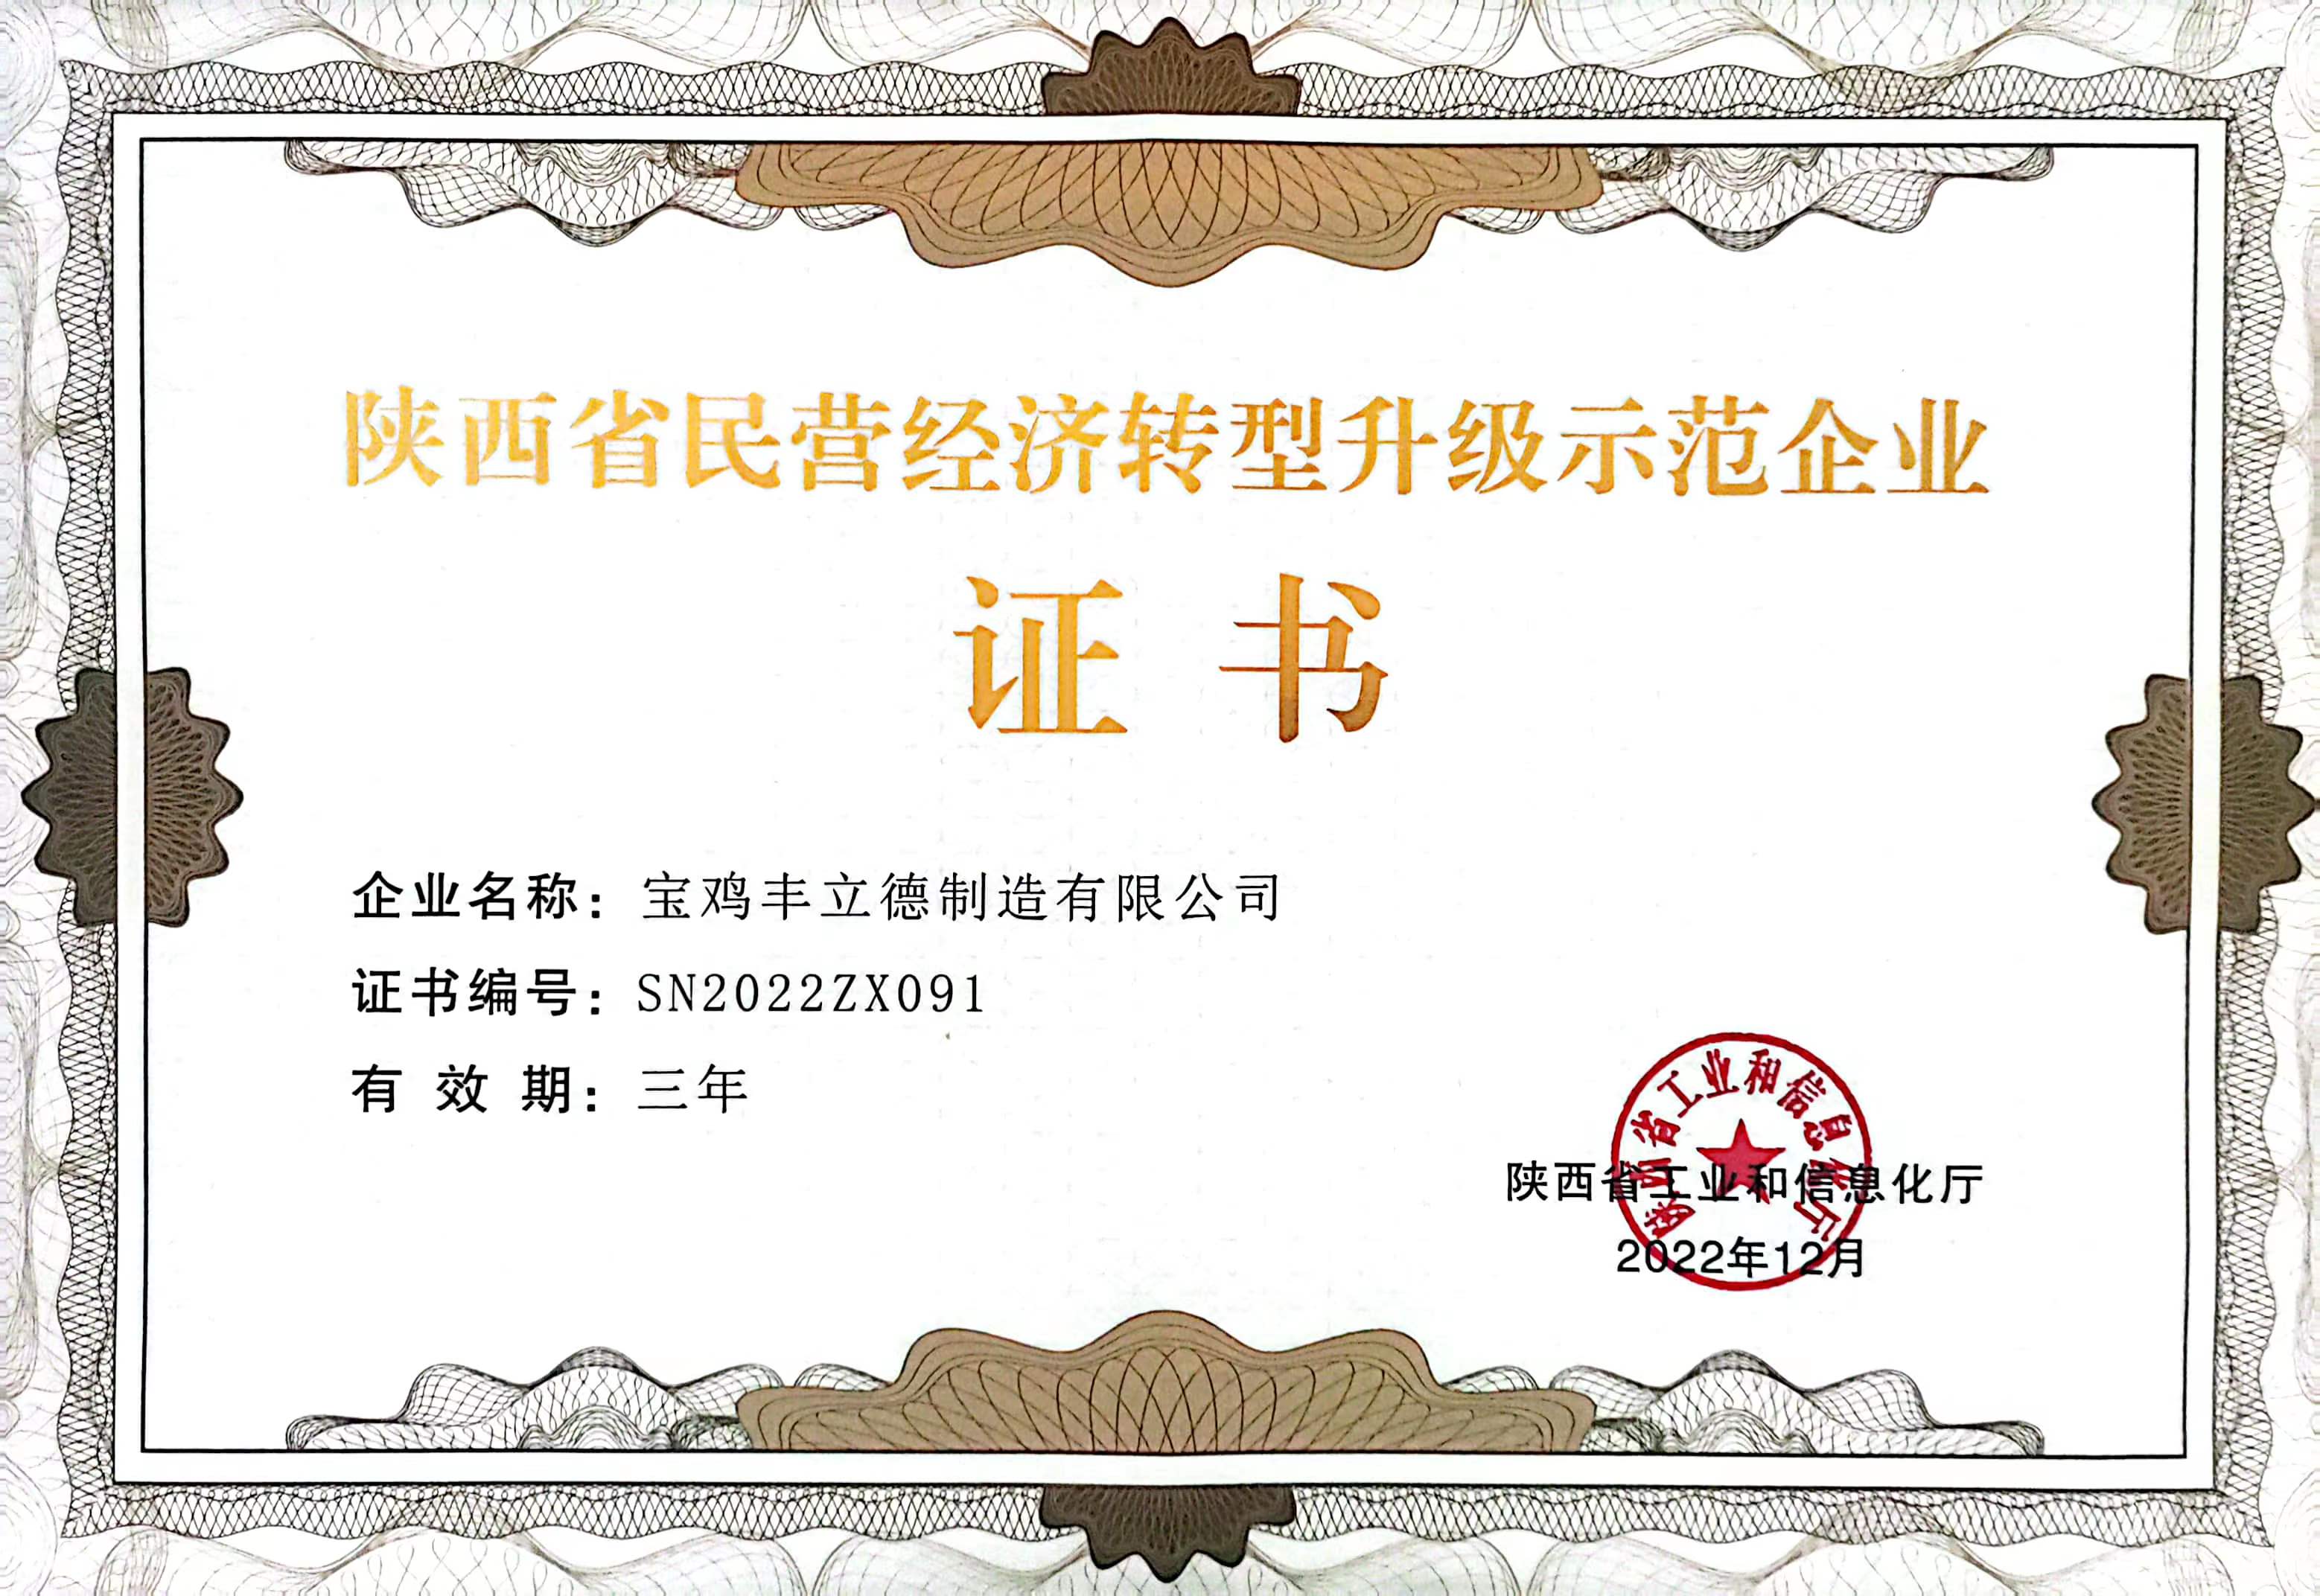 陕西省民营经济转型升级示范企业证书